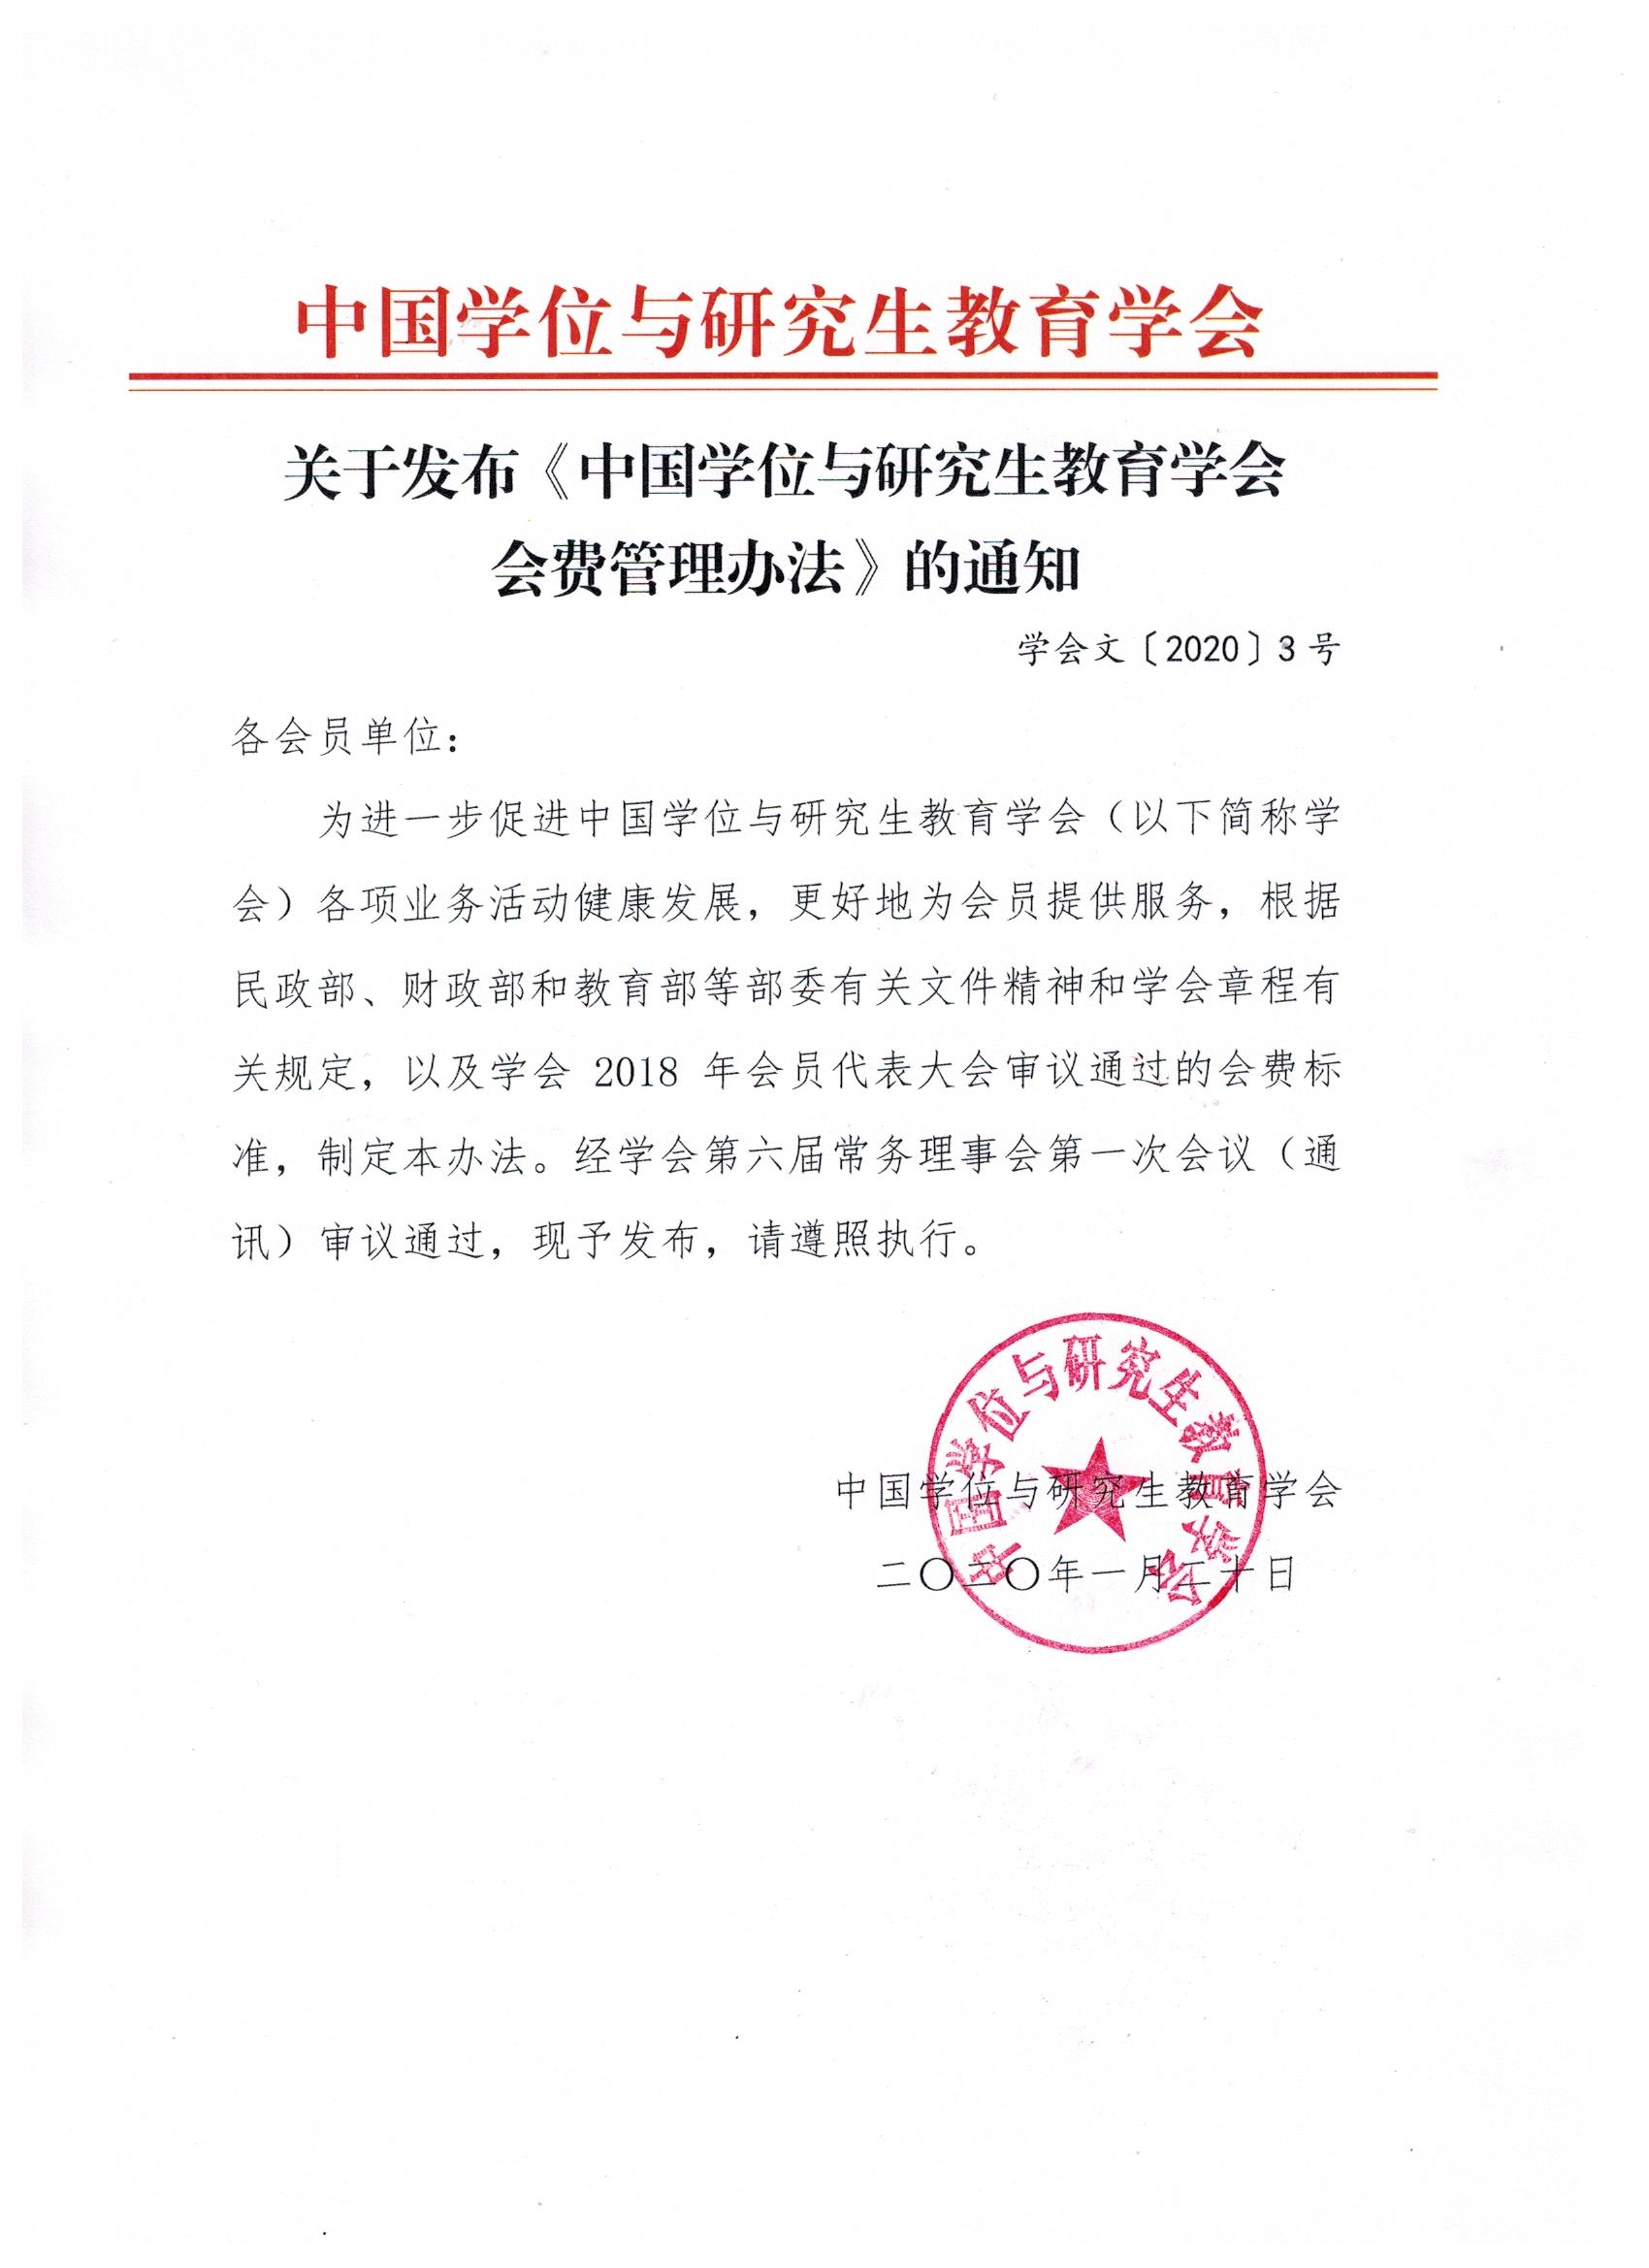 关于发布《中国学位与研究生教育学会会费管理办法》的通知.jpeg